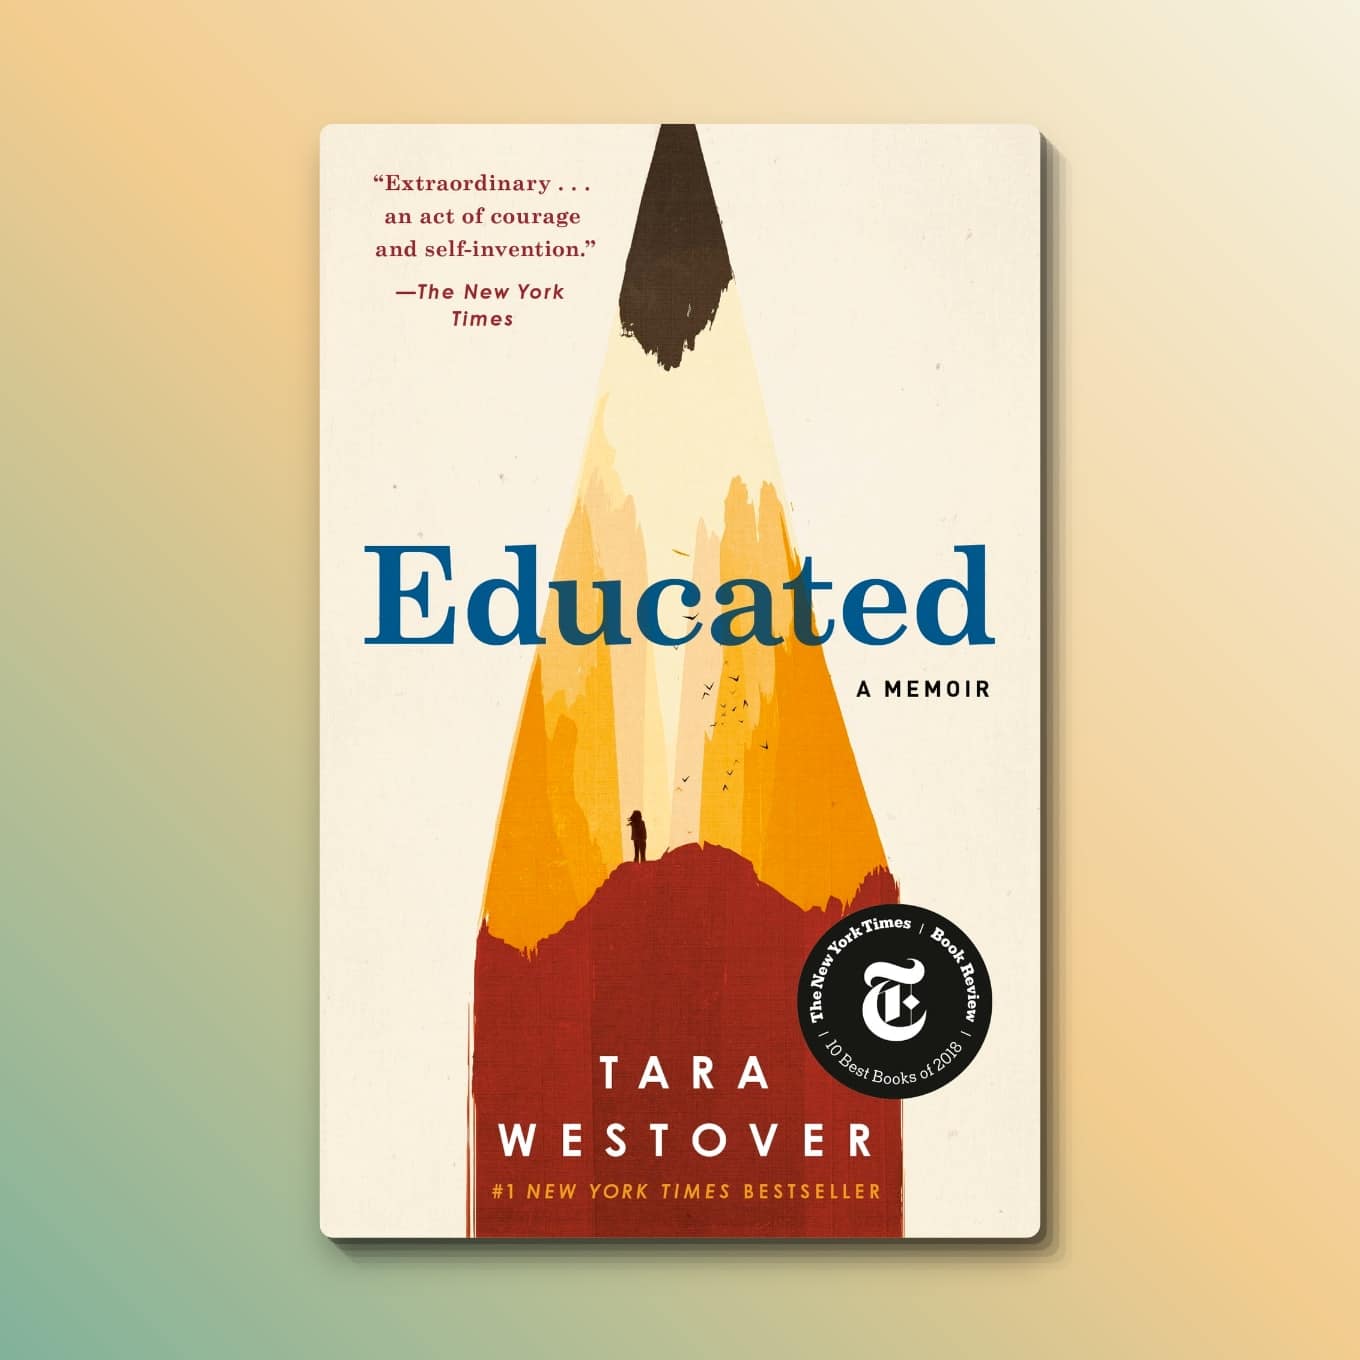 “Educated: A Memoir” by Tara Westover